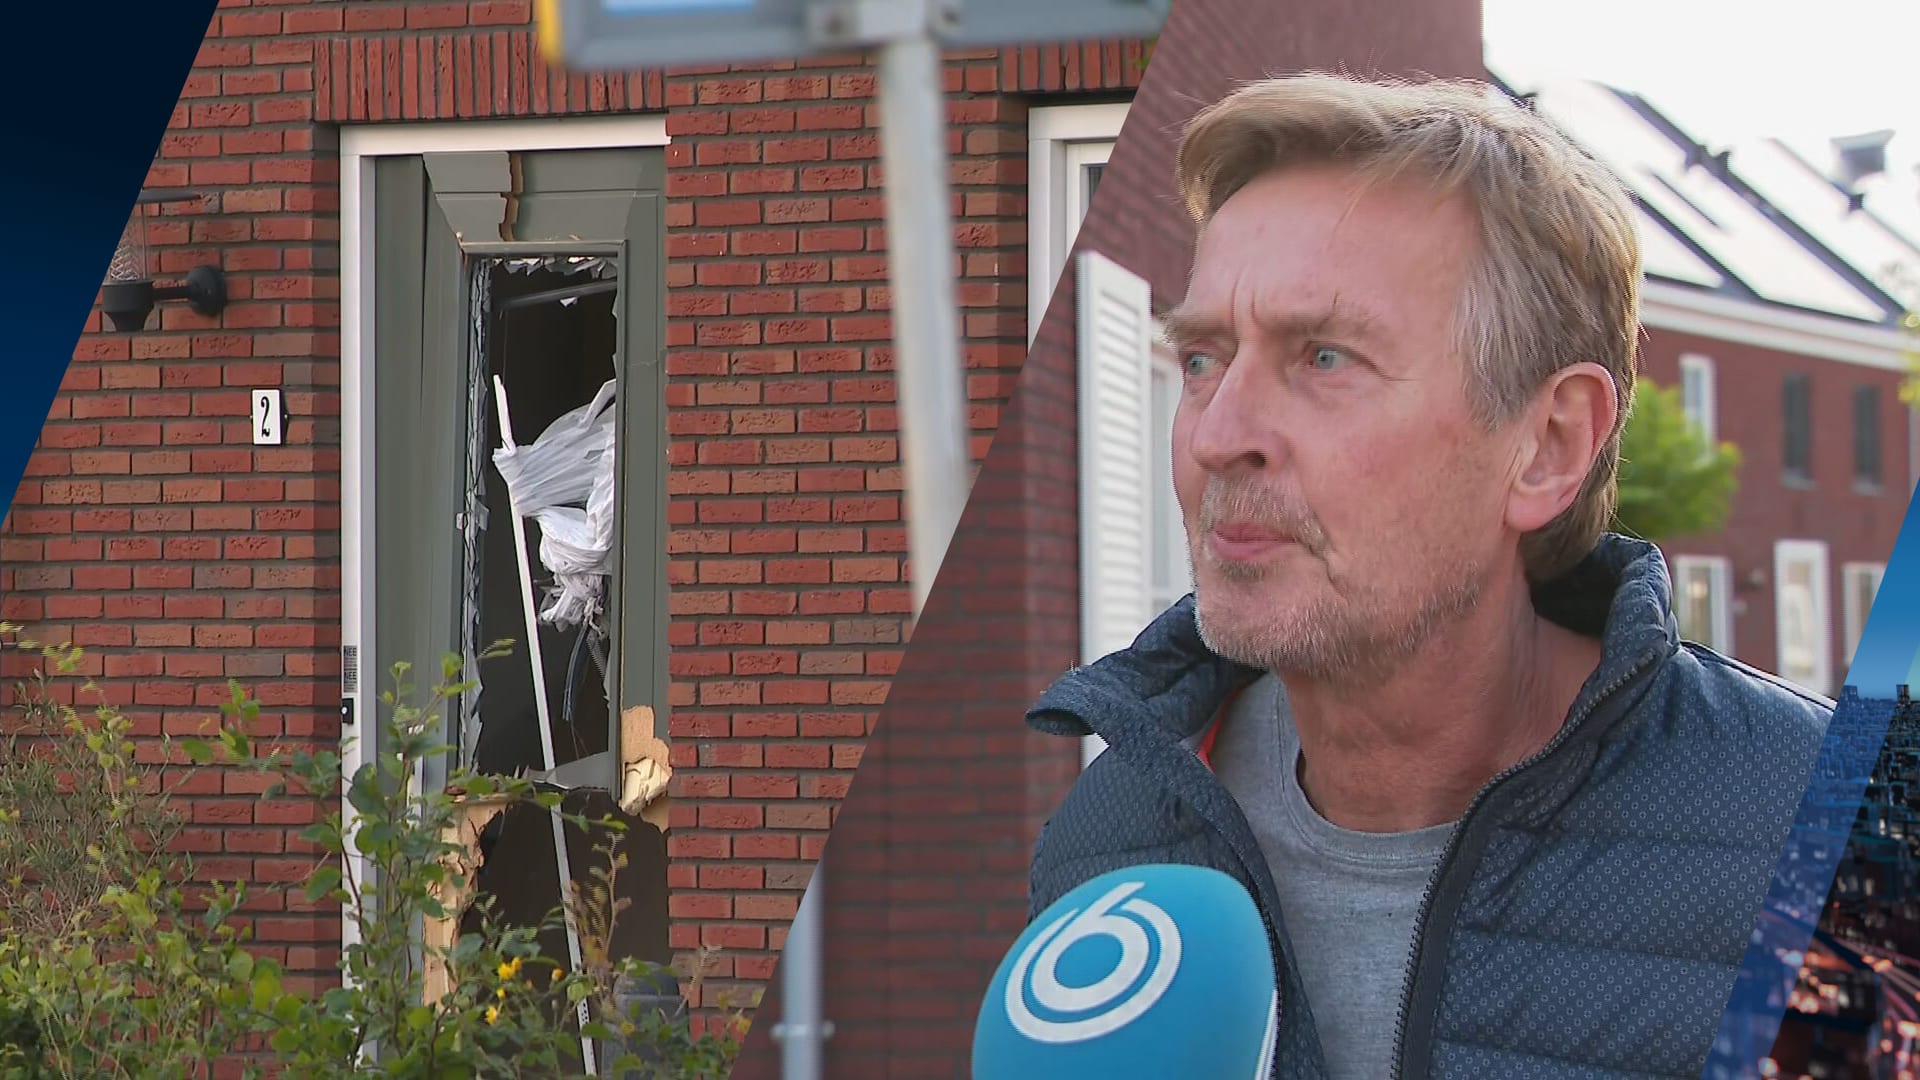 Robert in shock na explosie bij woning dochter in Hoef en Haag: 'Dit is een vergissing geweest'